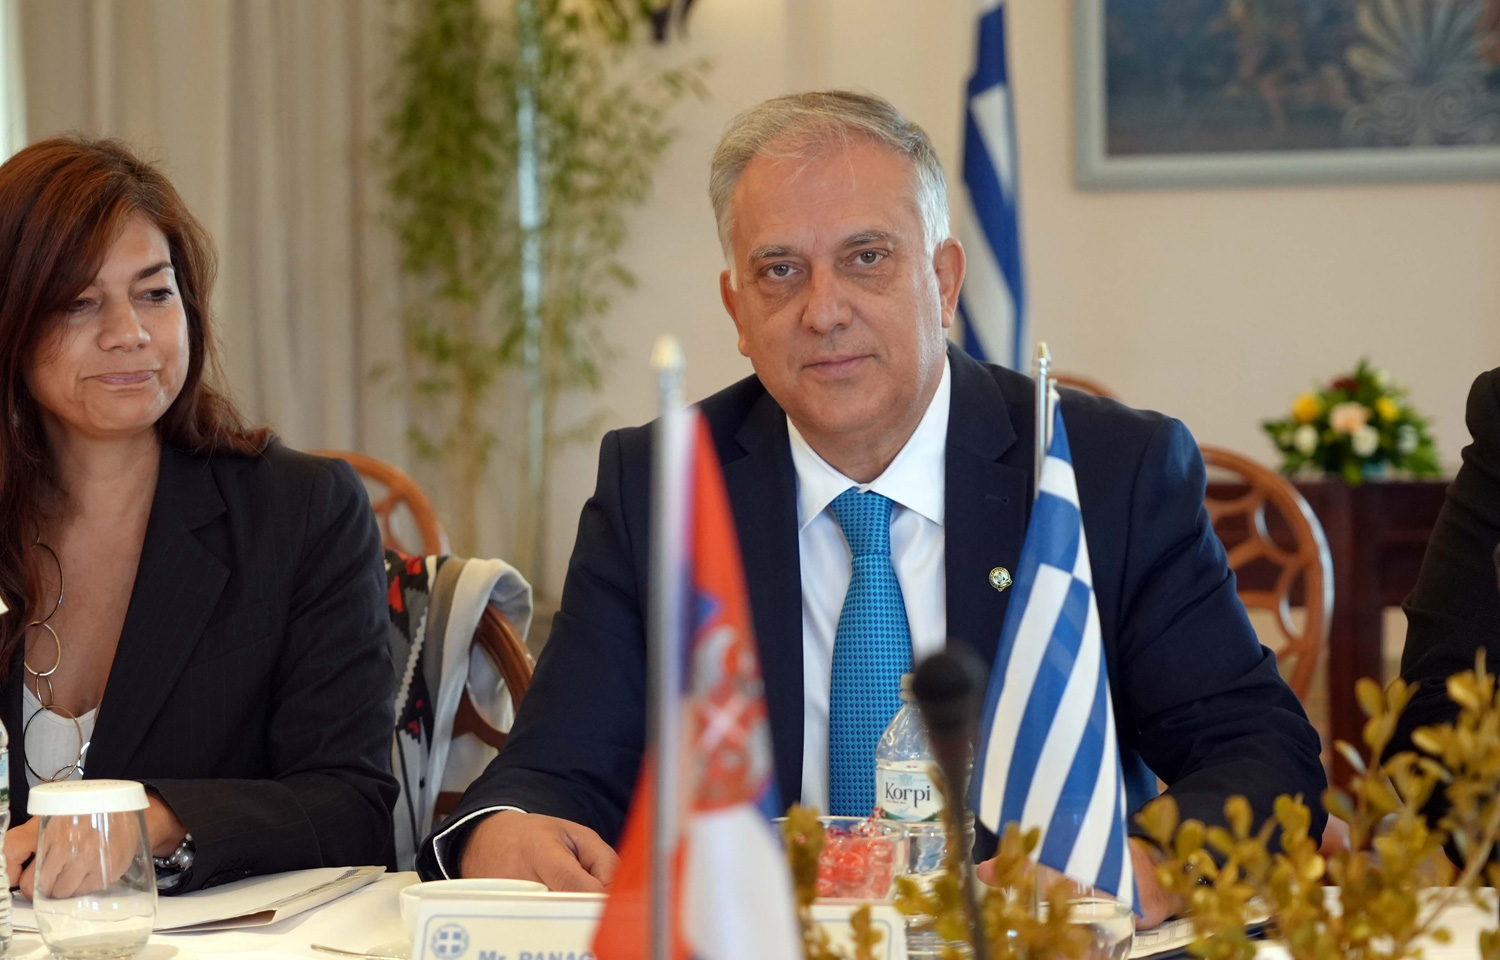 Ministri Vulin i Teodorikakos: Visok nivo saradnje srpske i grčke policije 